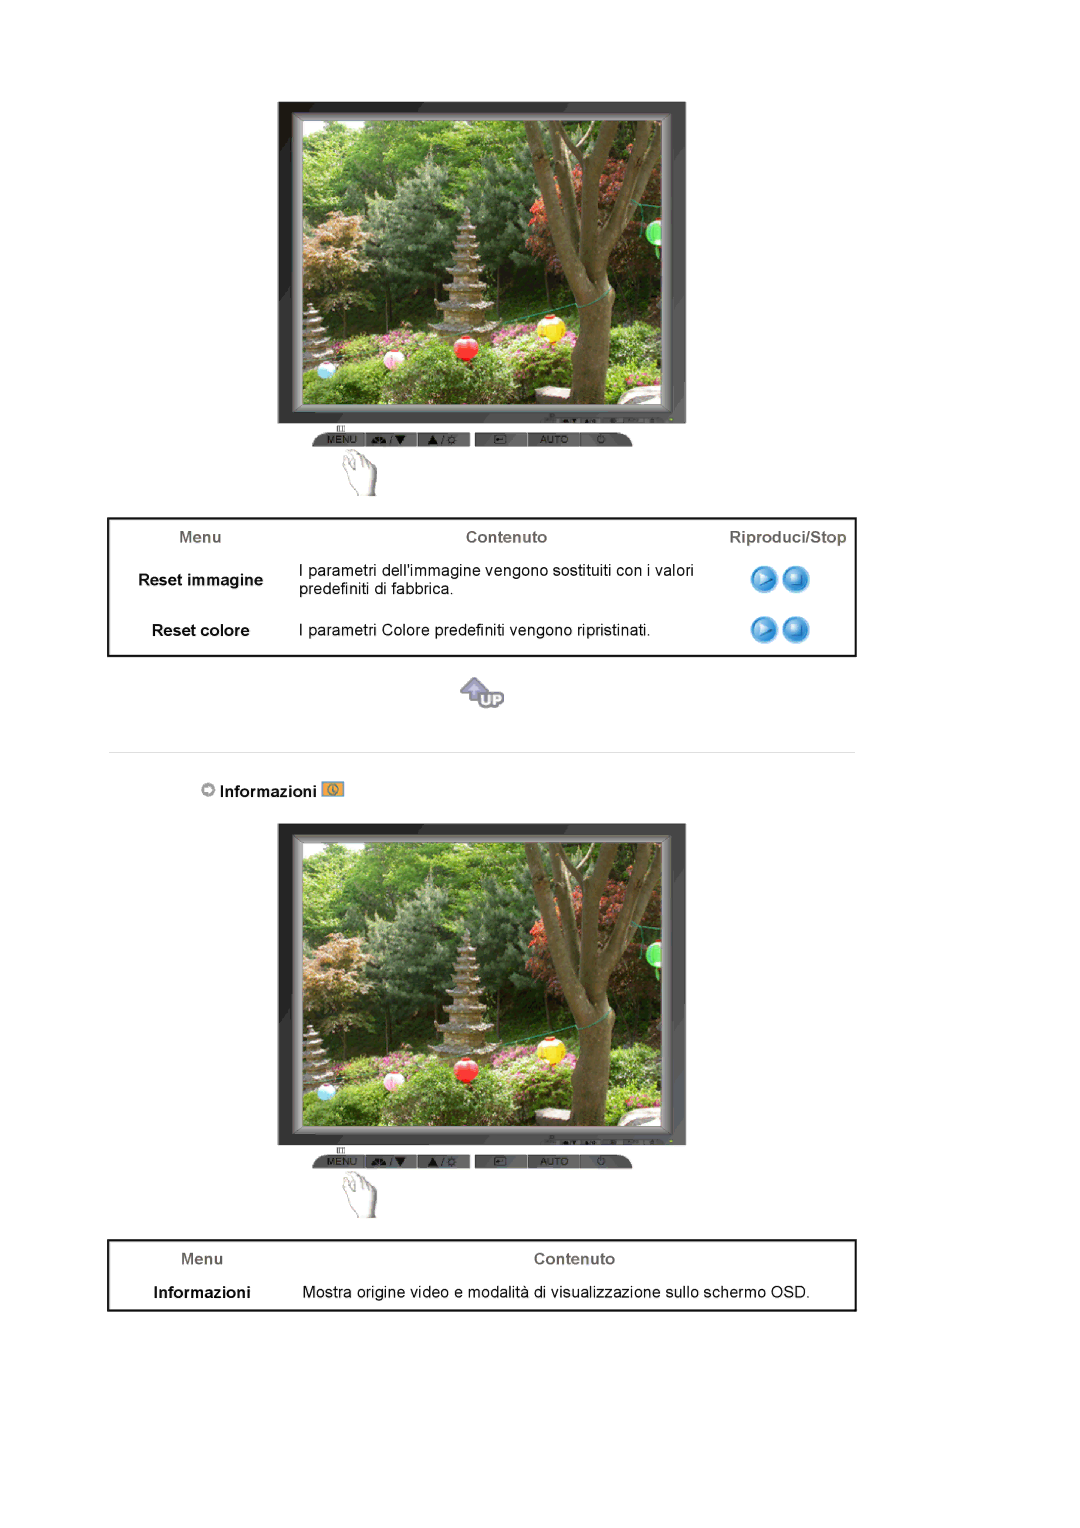 Samsung MJ17CSKS/EDC manual Reset immagine Reset colore, Menu Contenuto Informazioni 